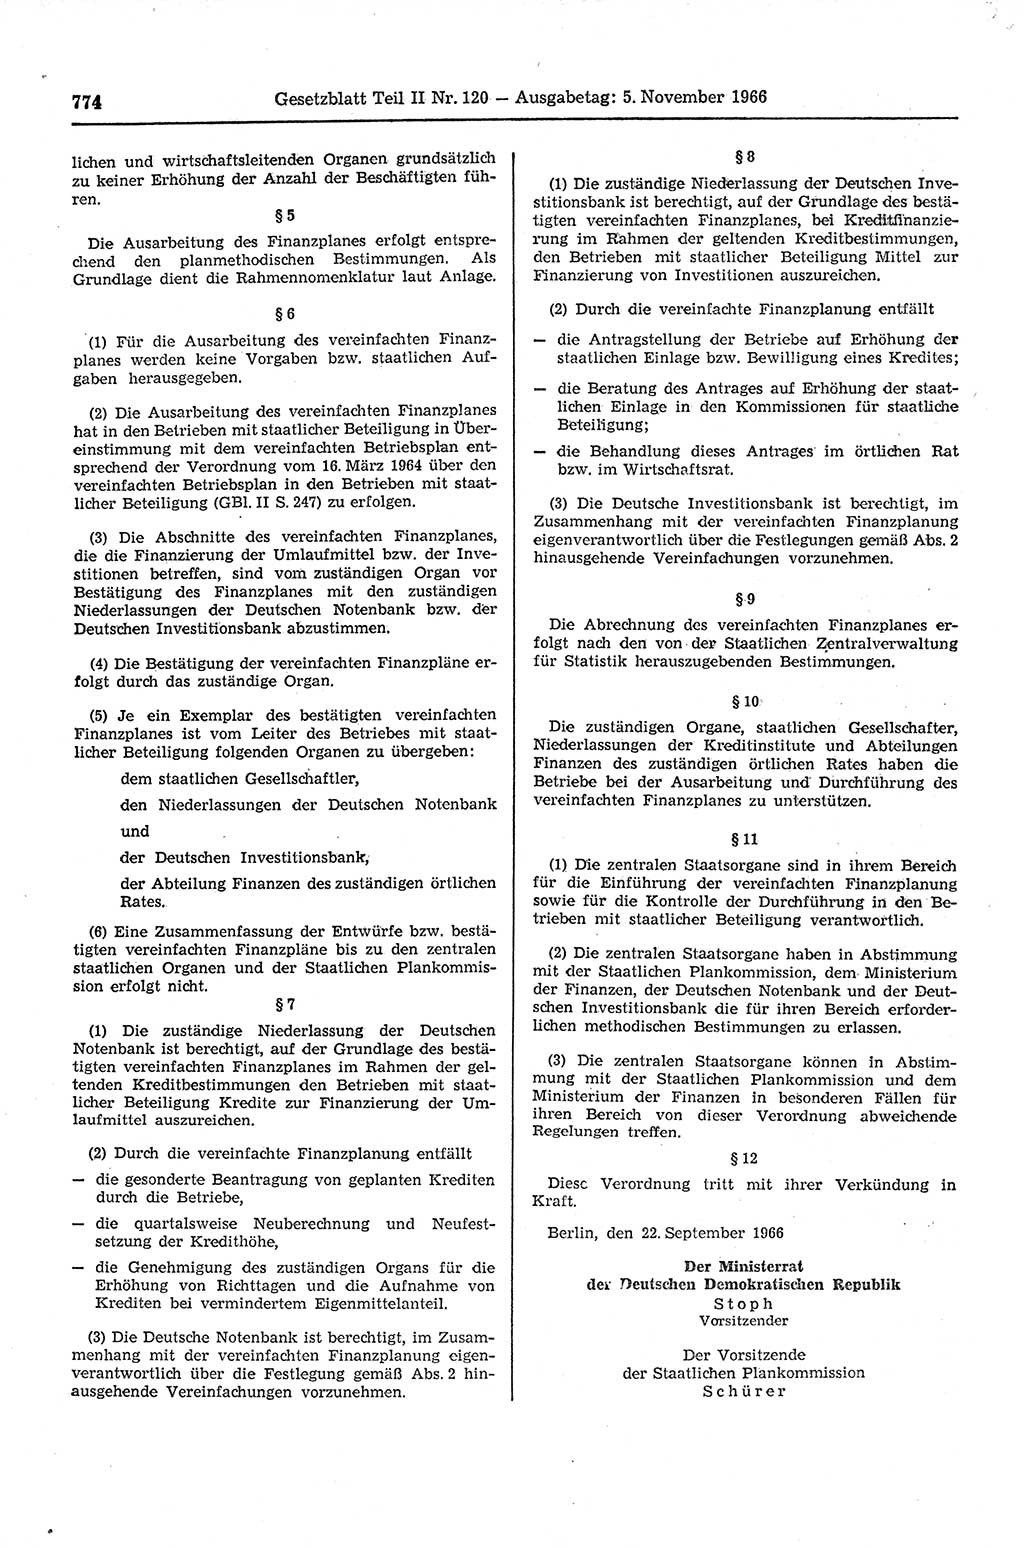 Gesetzblatt (GBl.) der Deutschen Demokratischen Republik (DDR) Teil ⅠⅠ 1966, Seite 774 (GBl. DDR ⅠⅠ 1966, S. 774)